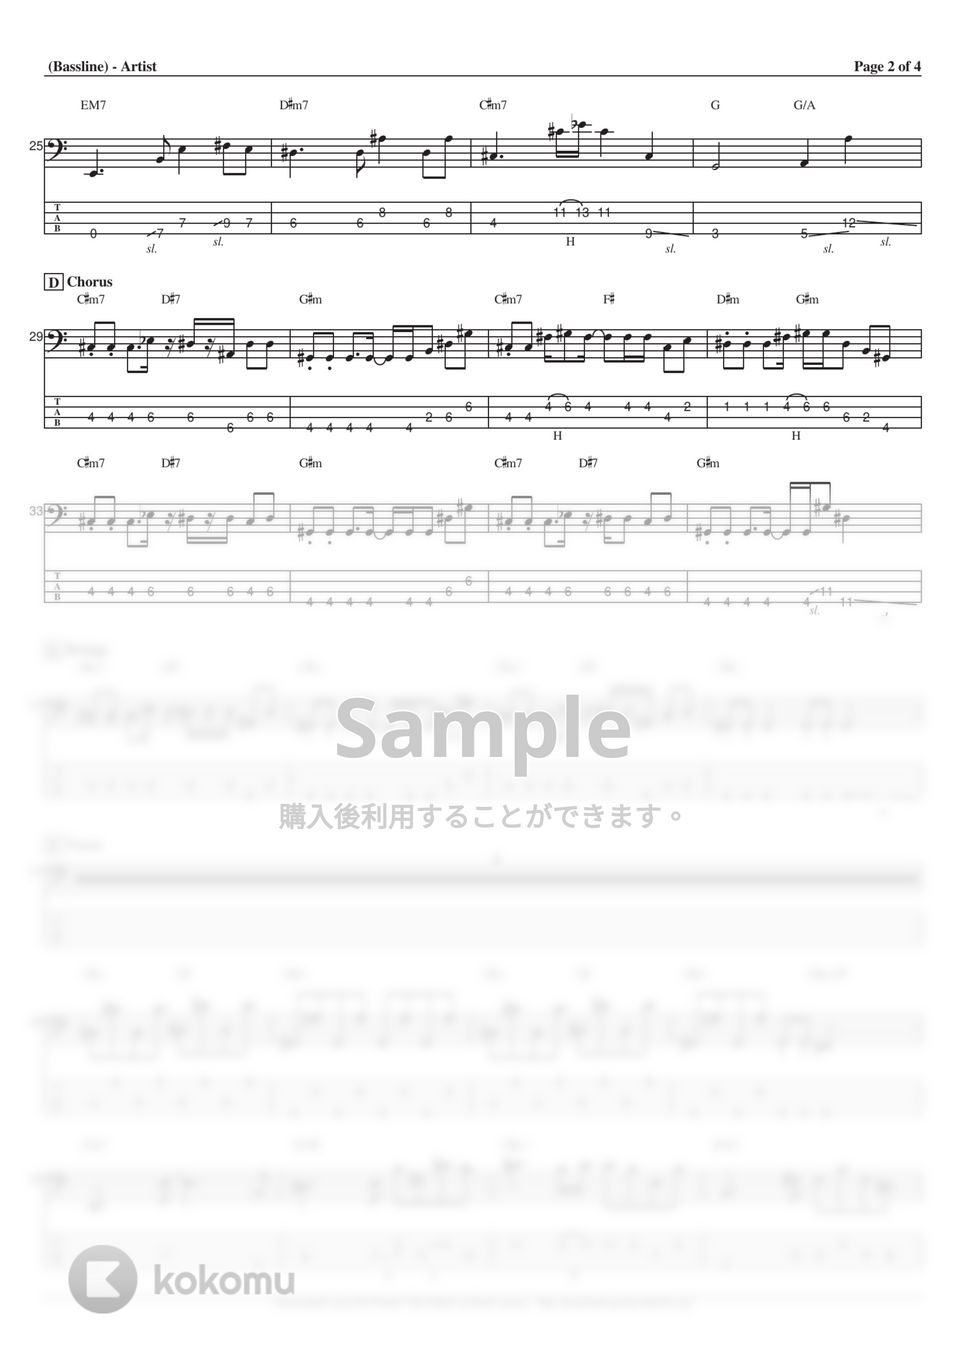 aiko - milk (ベース Tab譜 4弦) by T's bass score